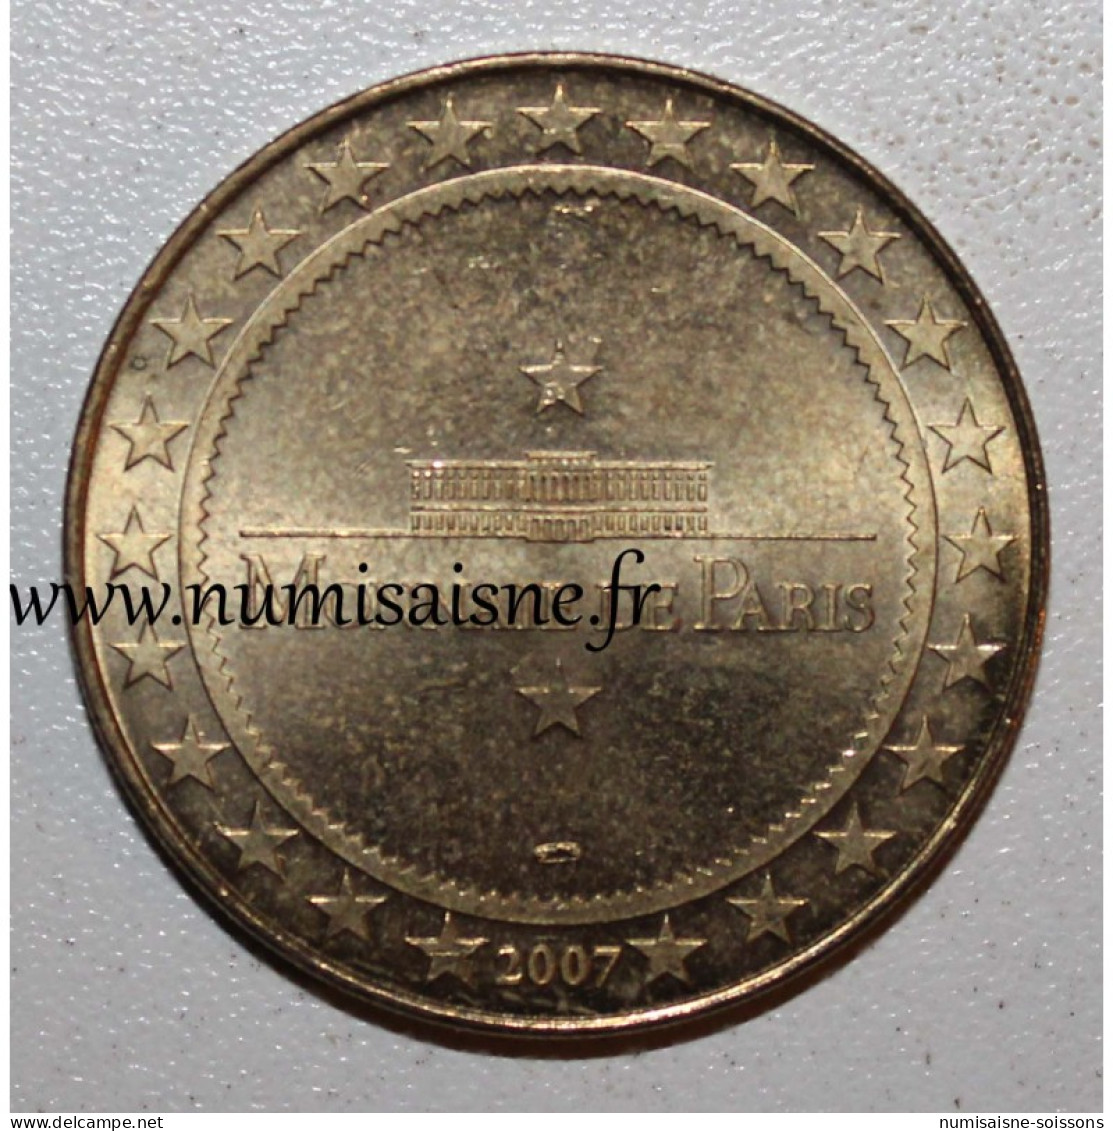 59 - LILLE - LES GEANTS LYDÉRIC ET PHINAERT - Monnaie De Paris - 2007 - 2007